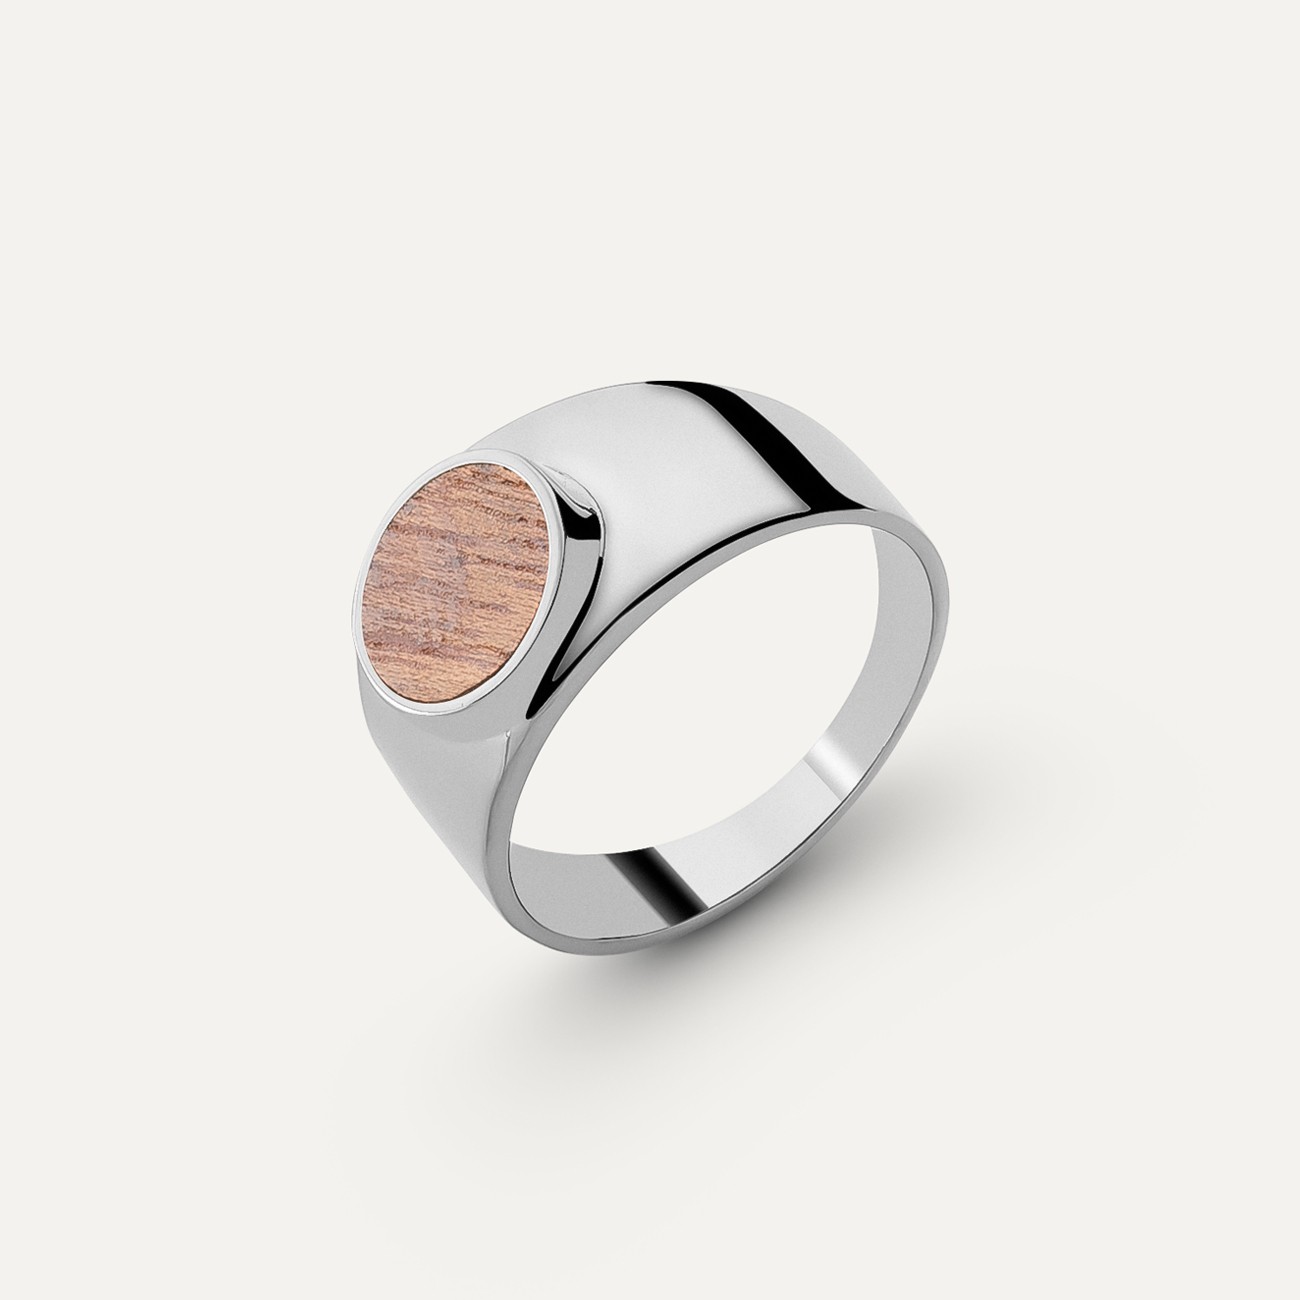 Round wooden signet ring